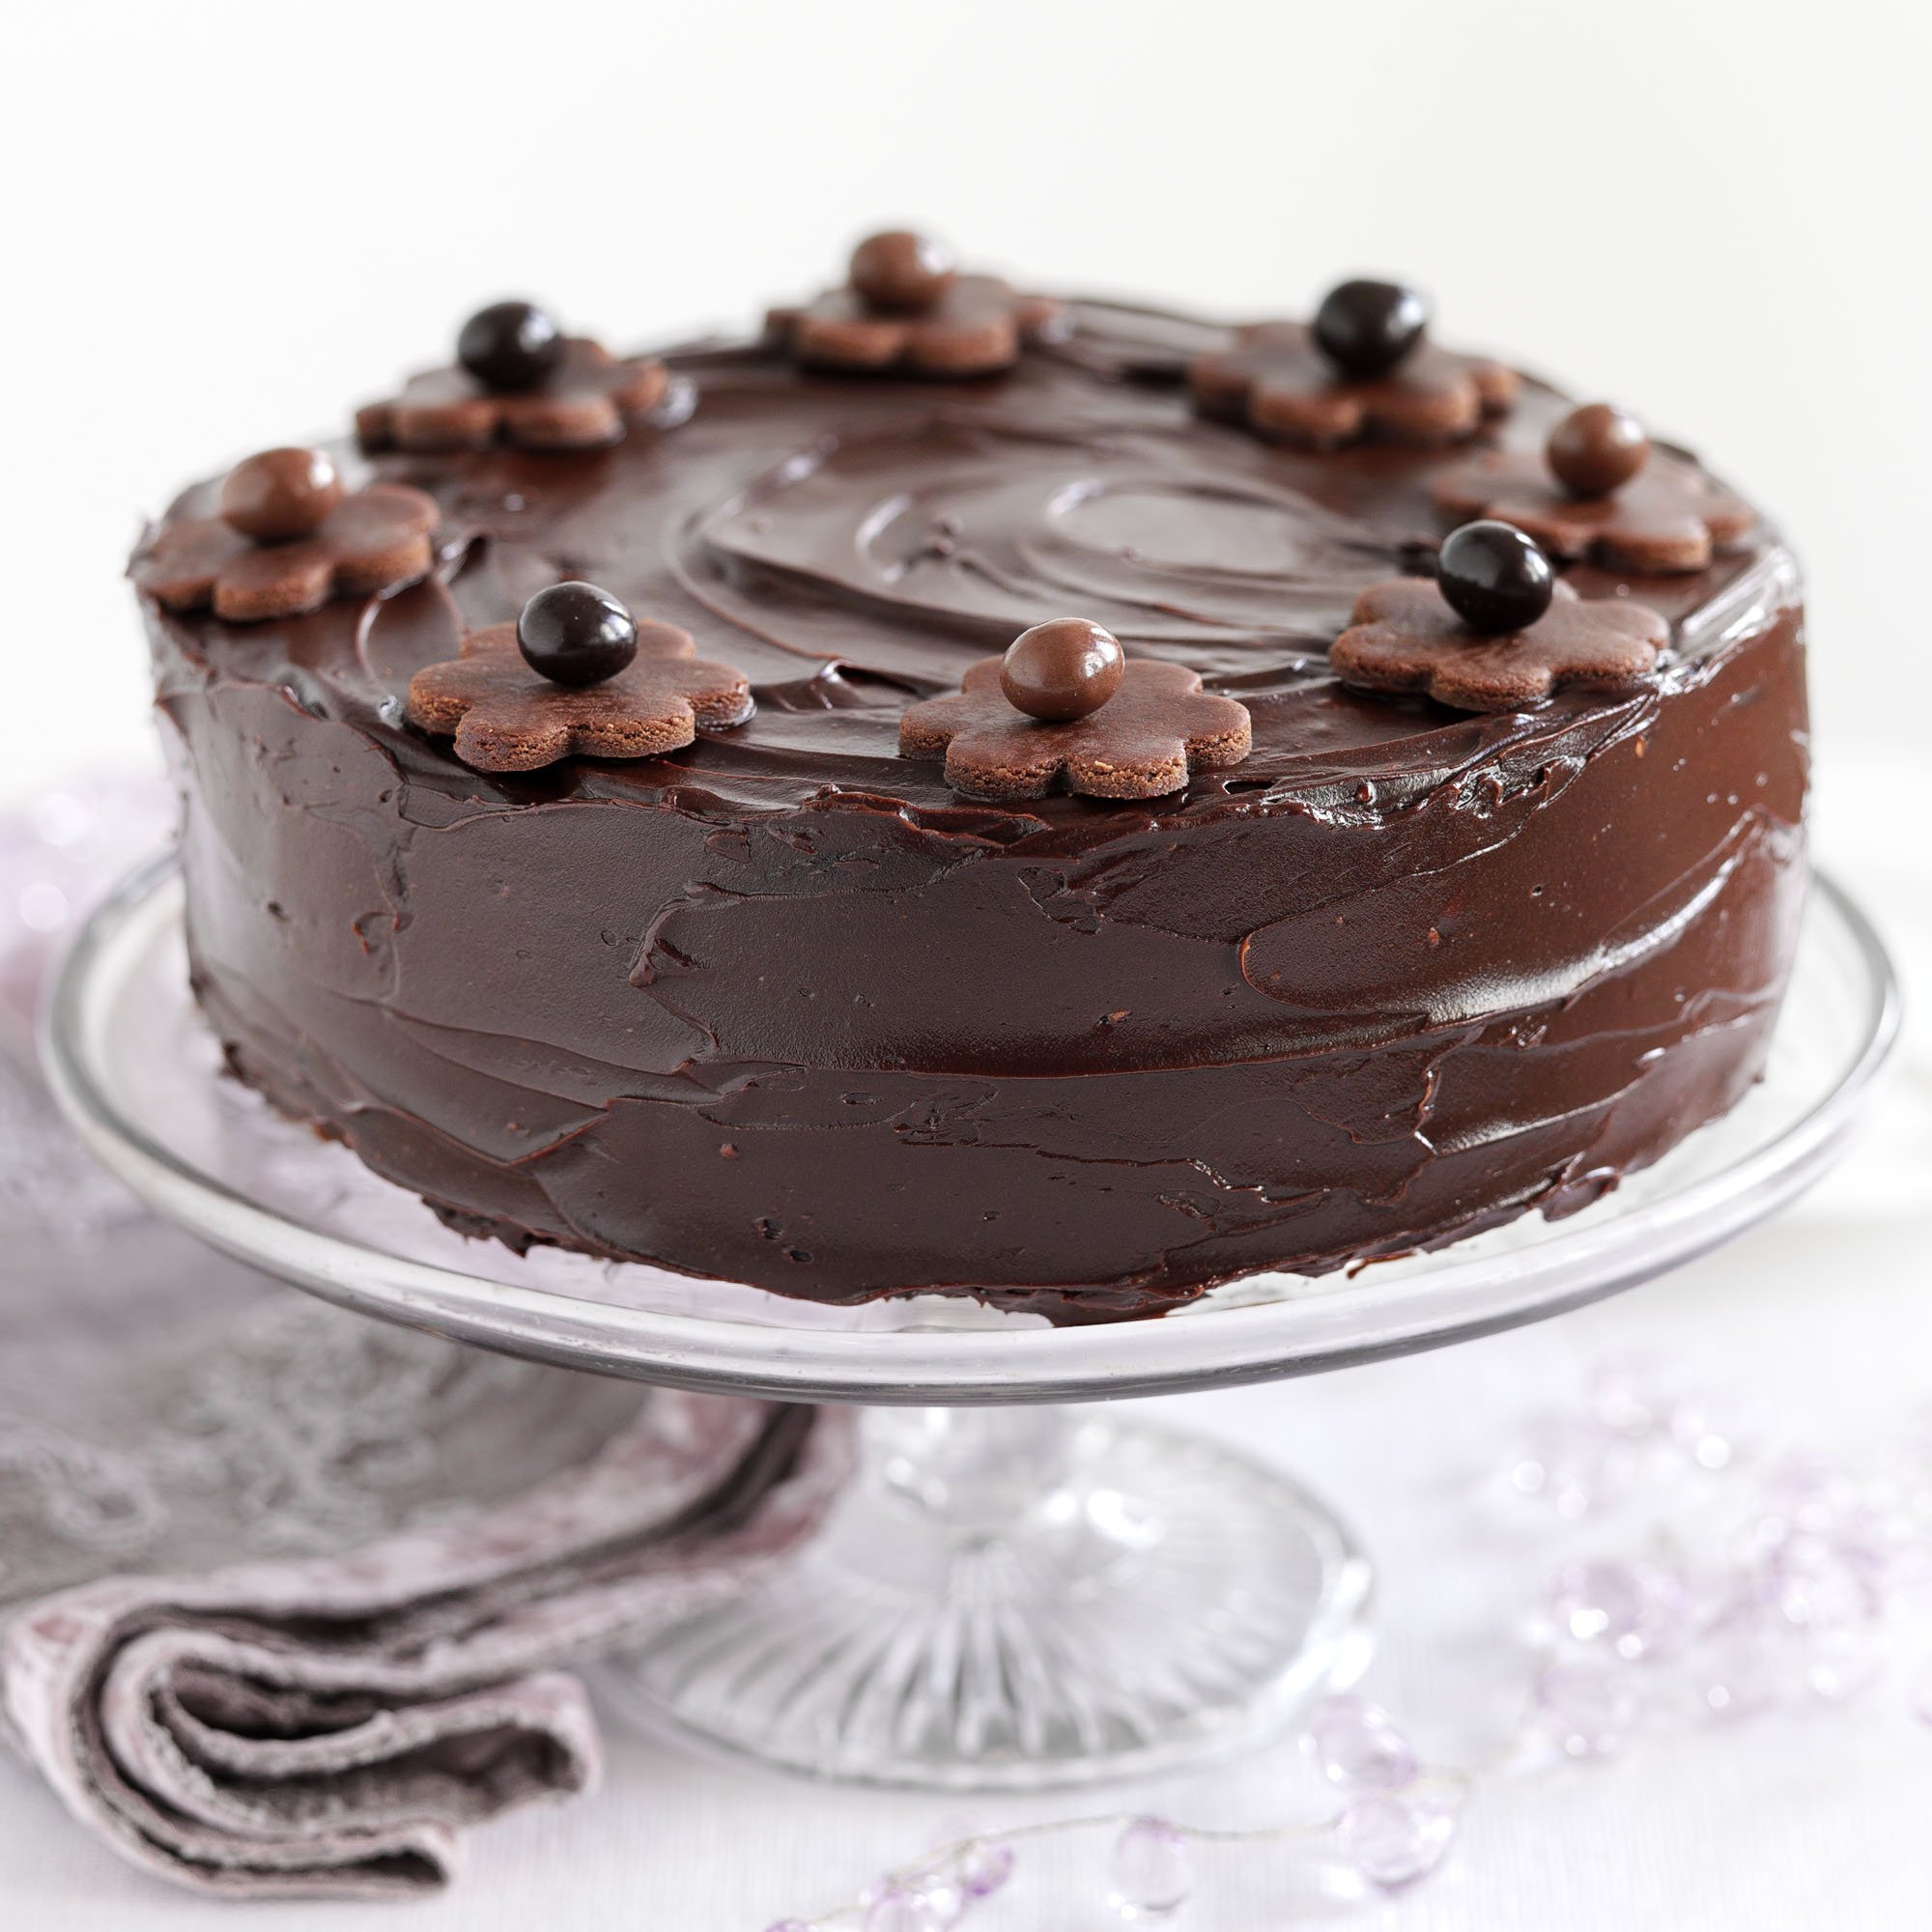 How To Make Chocolate Cake